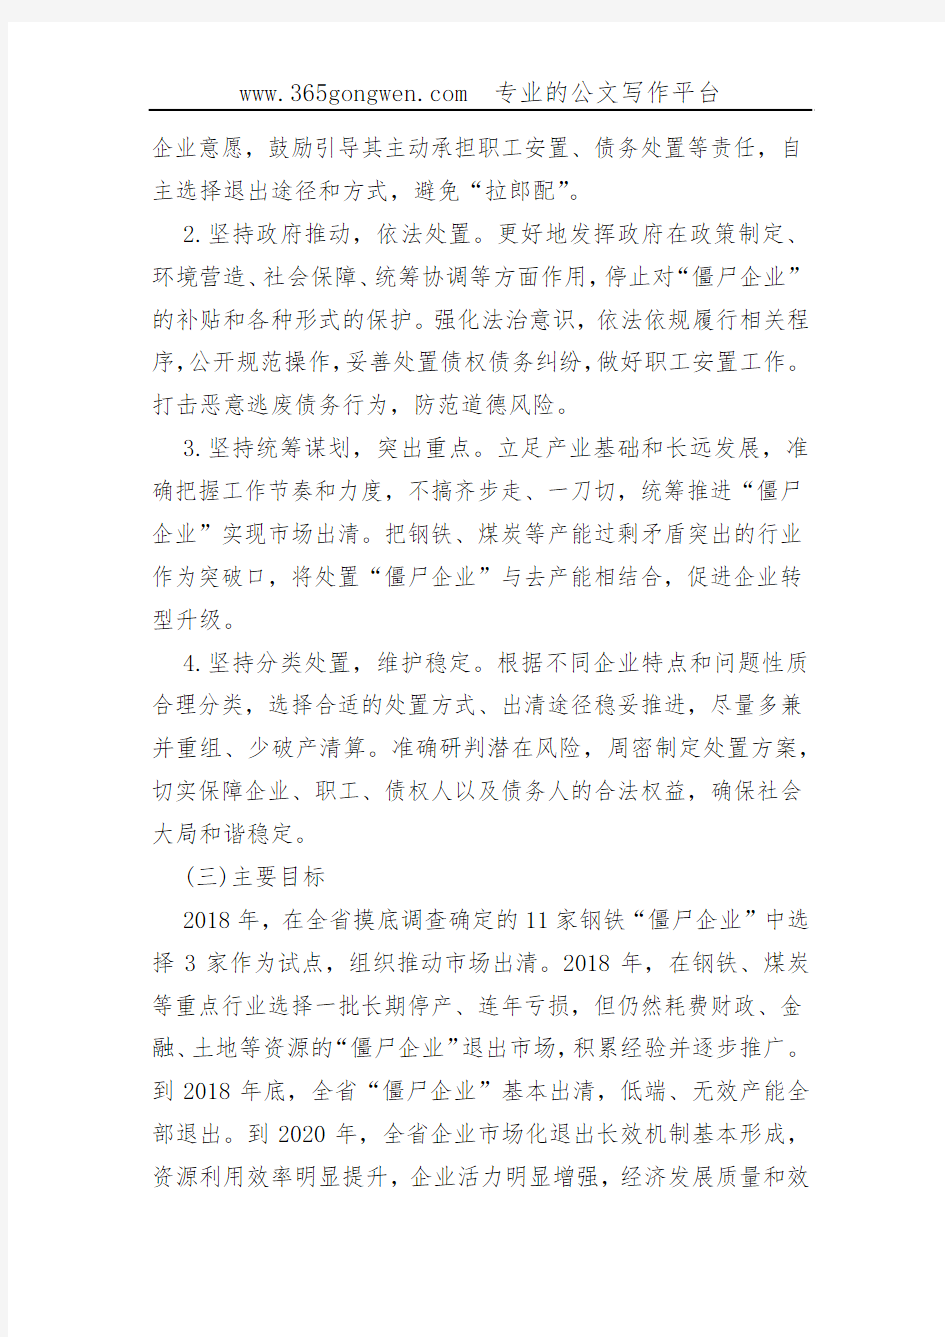 【发改意见】河北省人民政府关于处置“僵尸企业”的指导意见